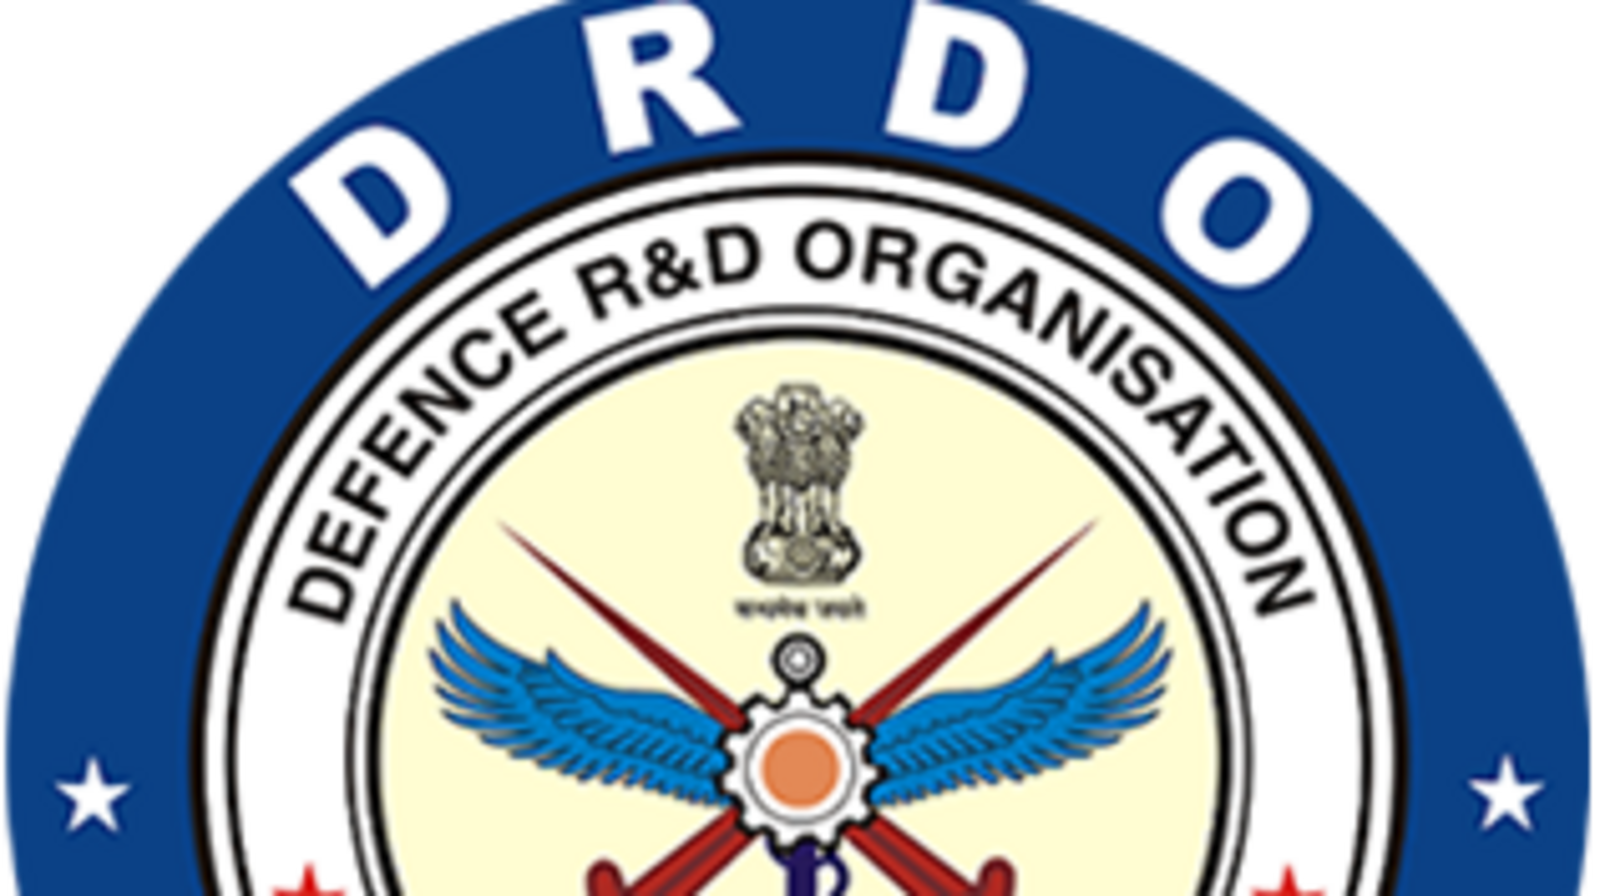 DRDO CEPTAM भर्ती: 1061 A&A पदों के लिए drdo.gov.in पर आवेदन करने की अंतिम तिथि